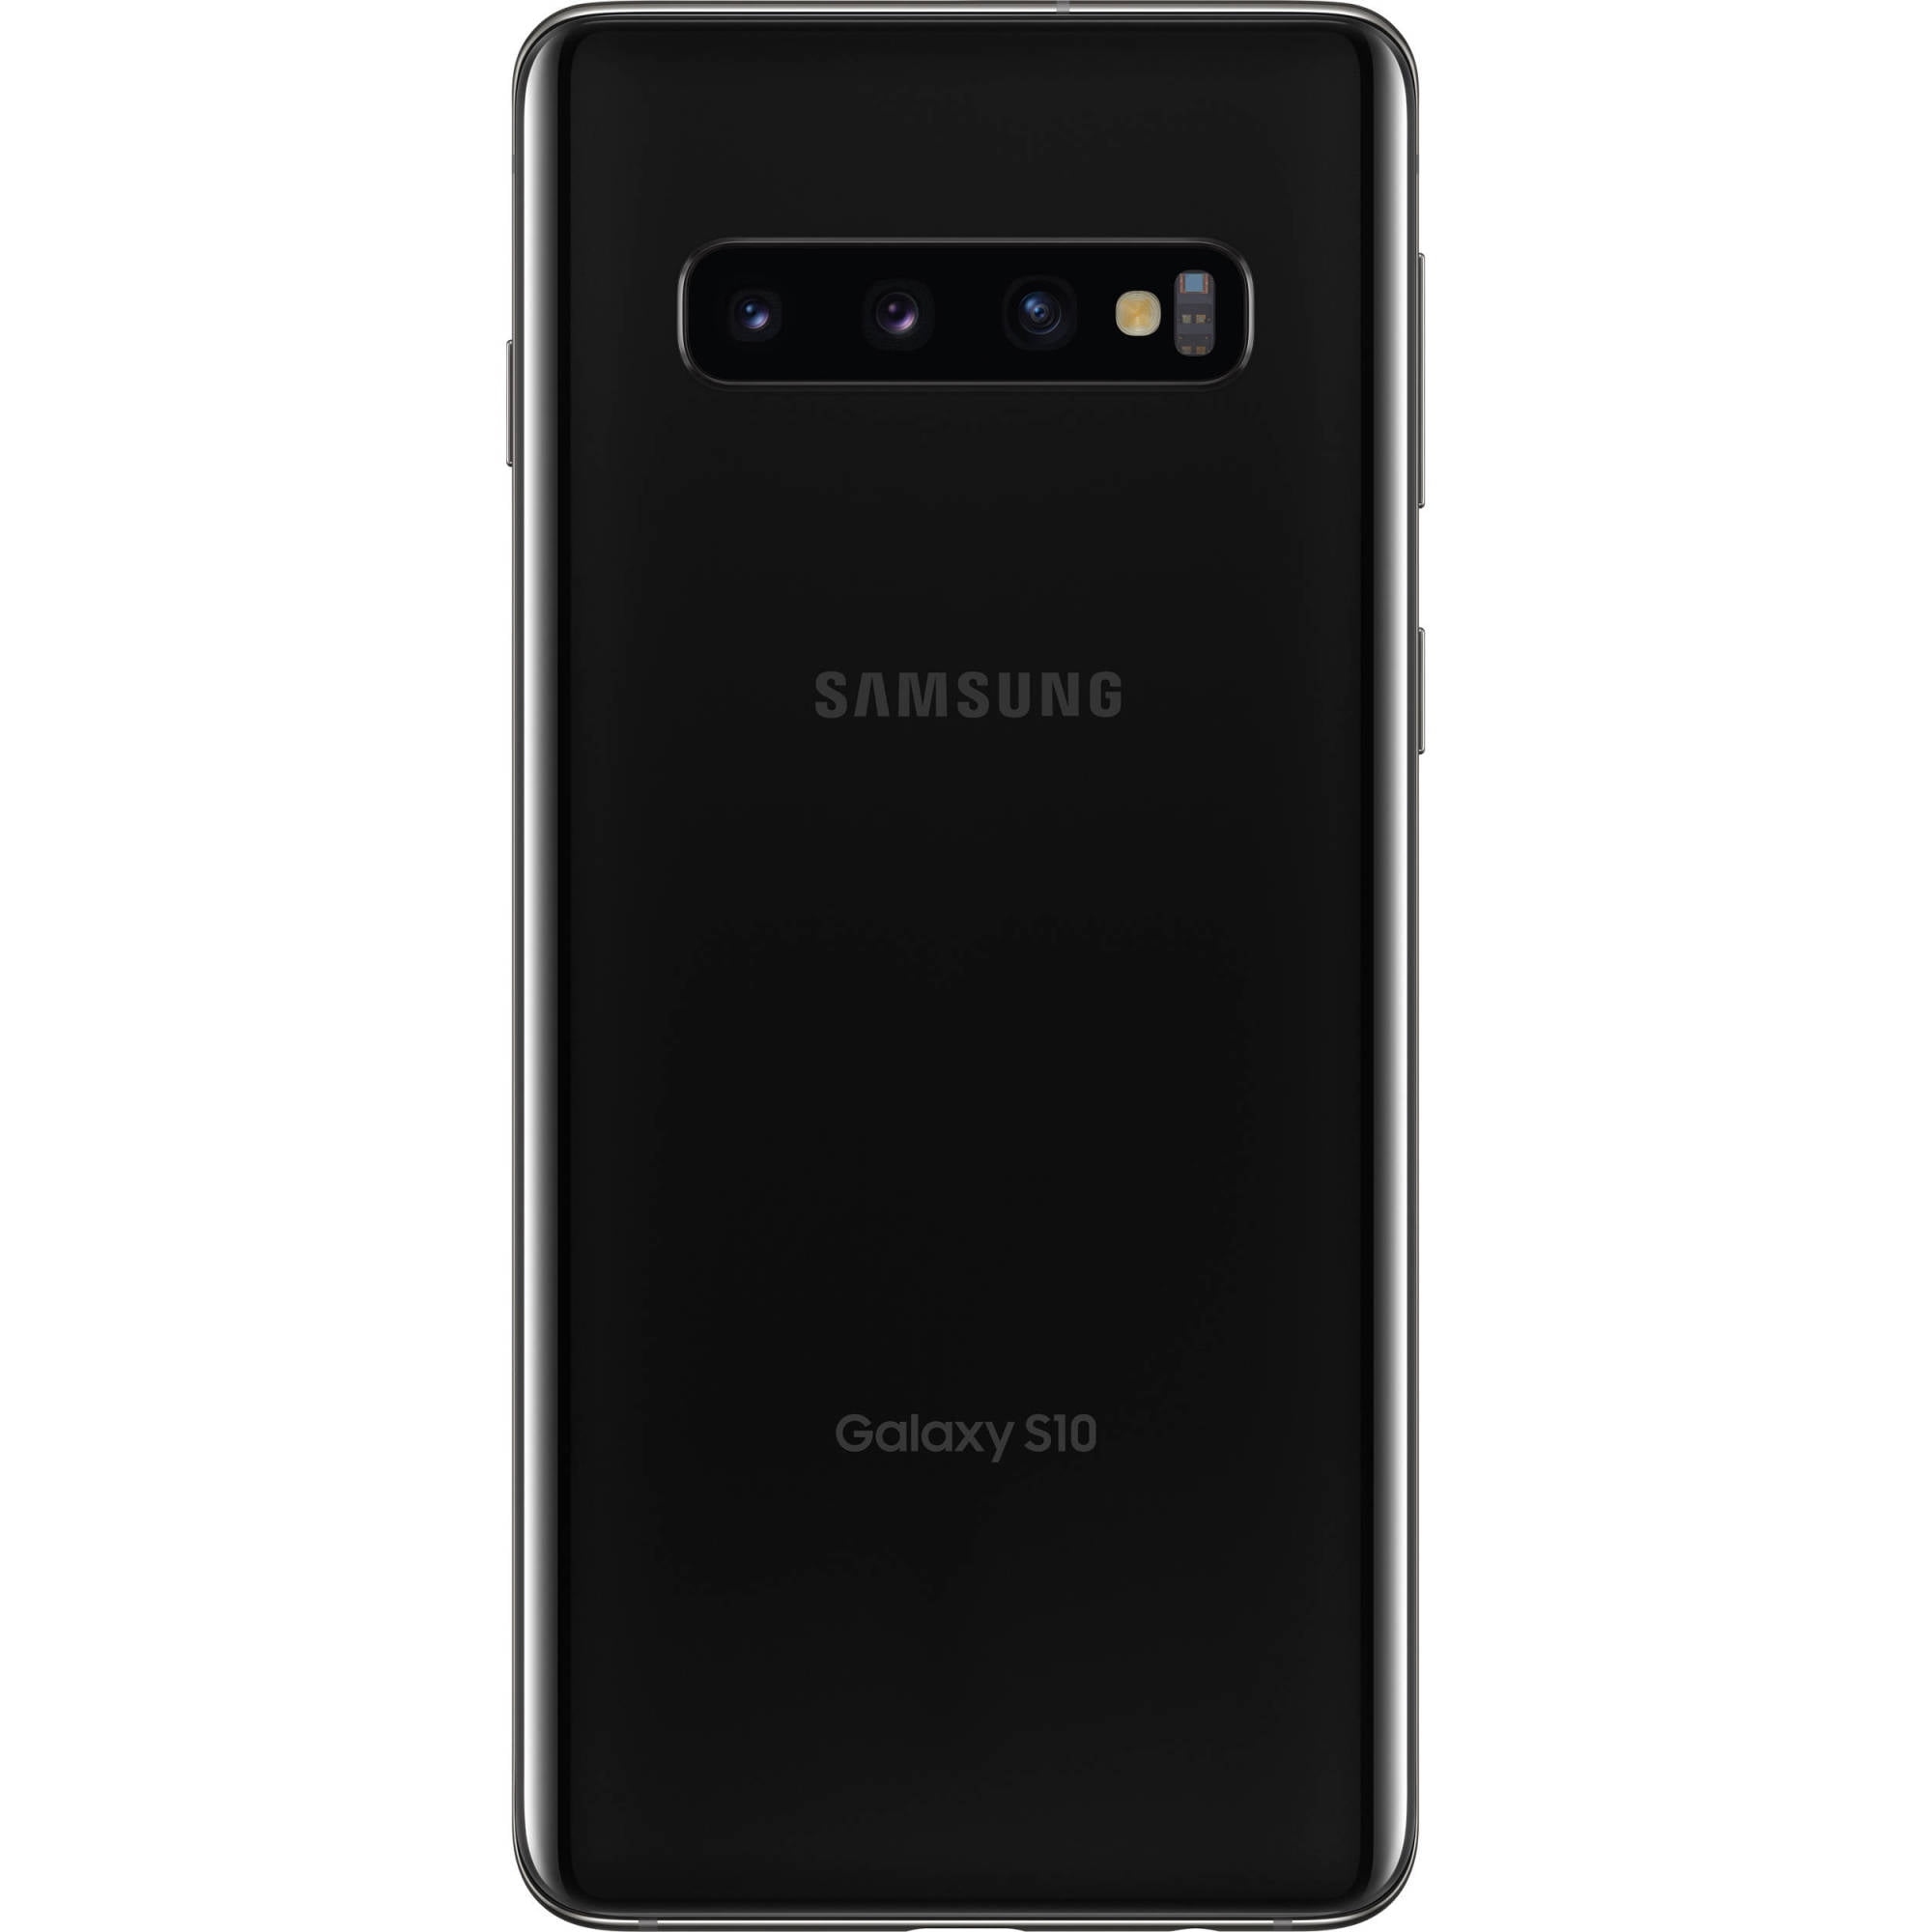 スマートフォン/携帯電話 スマートフォン本体 Restored SAMSUNG Galaxy S10 G973U 128GB T-Mobile Locked Android Phone -  Prism Black (Refurbished)